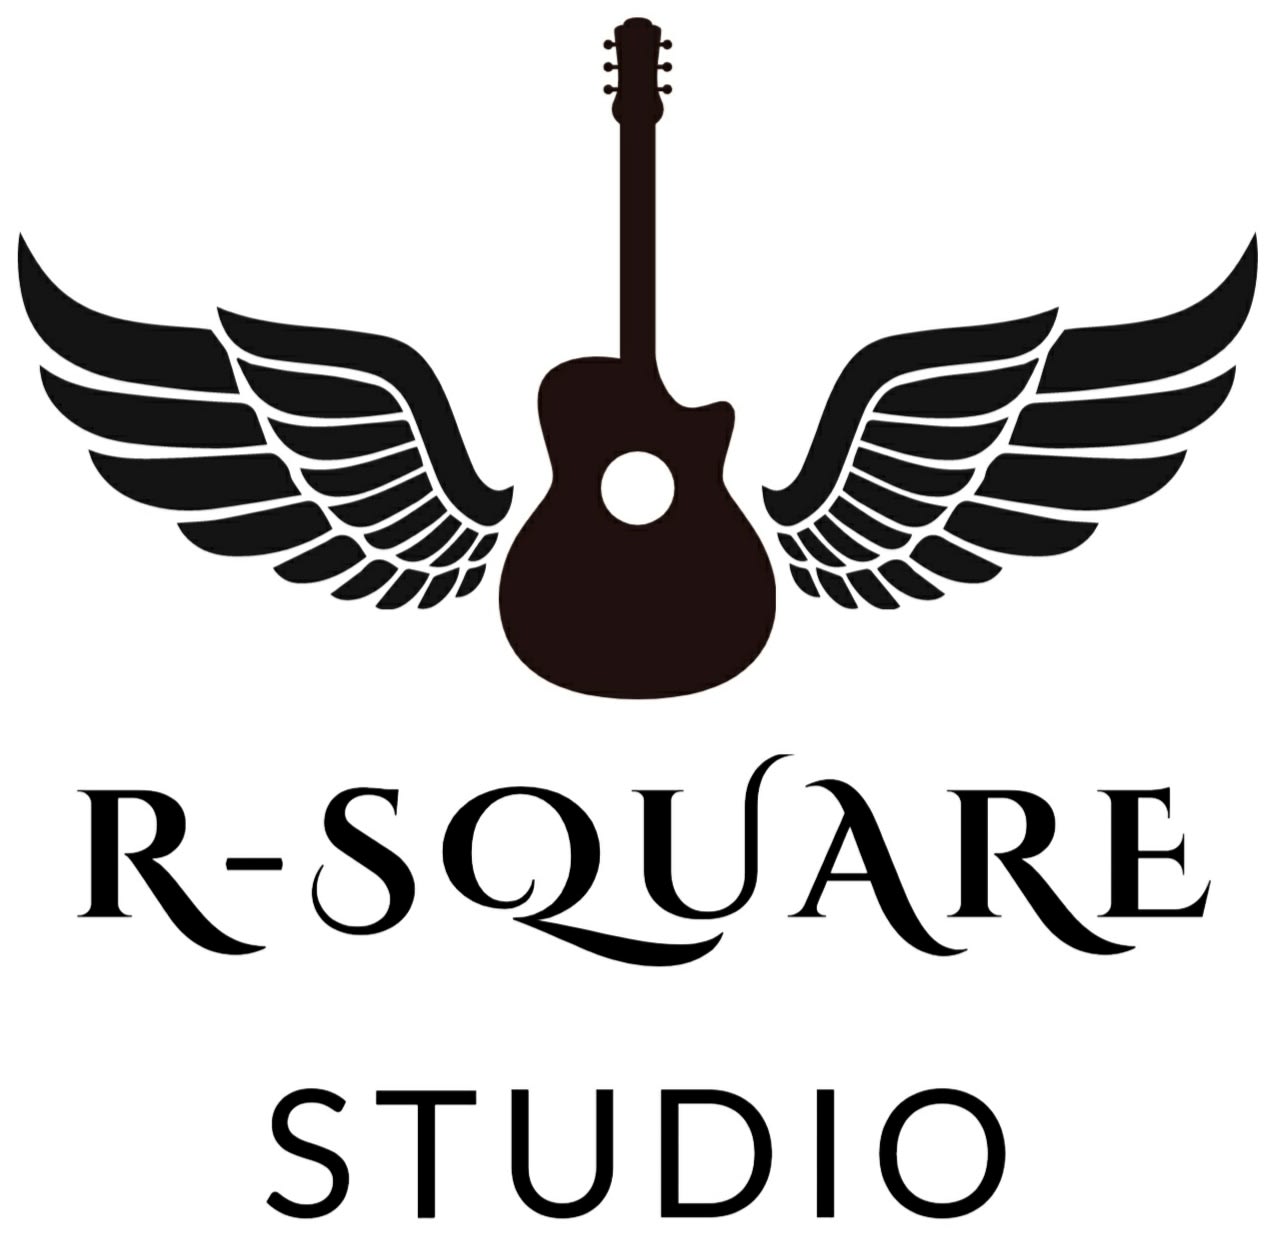 Ranj Rock Studio(R-Square STUDIO)